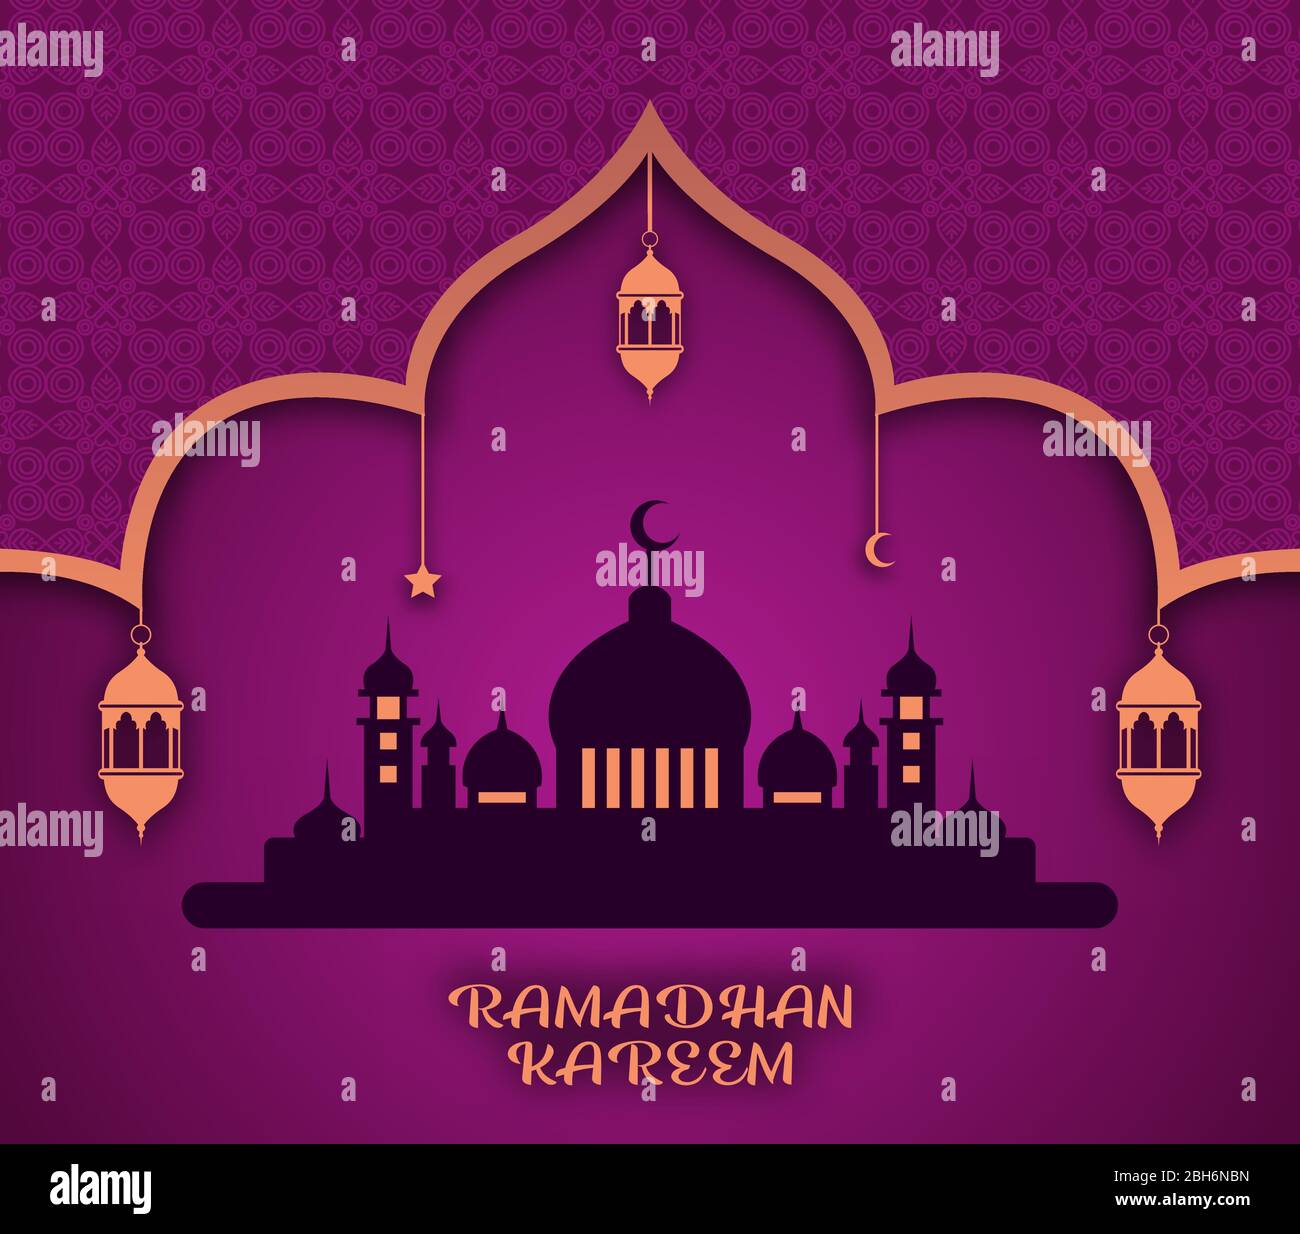 Vettore Ramadan Kareem con illustrazione della silhouette della moschea e delle lanterne appese con colori viola e arancione e motivi su di essa. Illustrazione Vettoriale